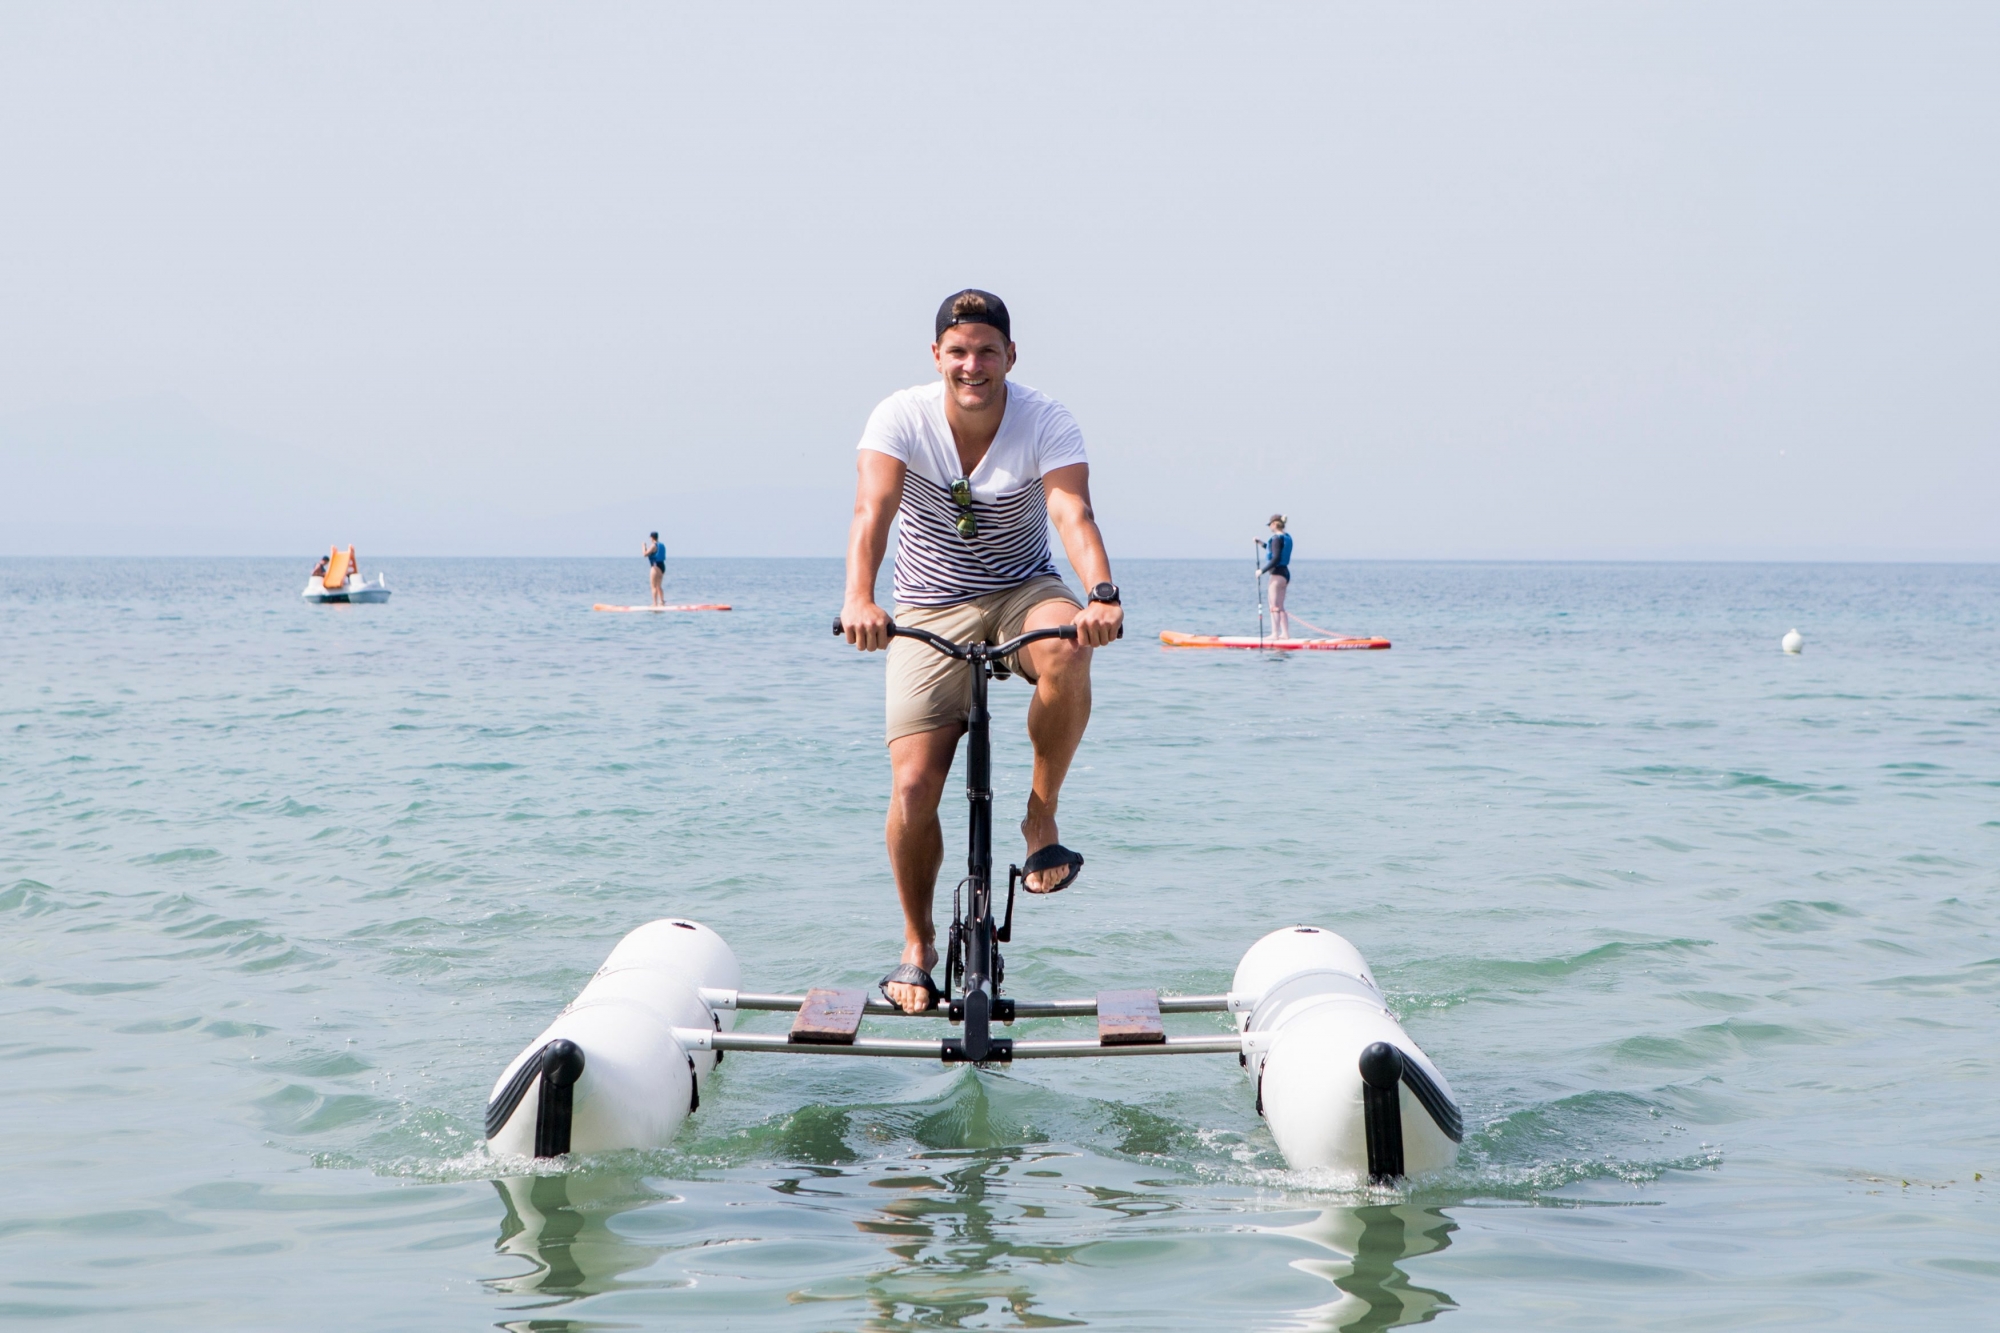 Préverenges, vendredi 23 juin 2017
On a testé pour vous les vélos aquatiques WaterBike Swiss à la plage de Préverenges. Yohan Barbey, responsable de produit de WaterBike Swiss

Sigfredo Haro WaterBike Swiss, Préverenges